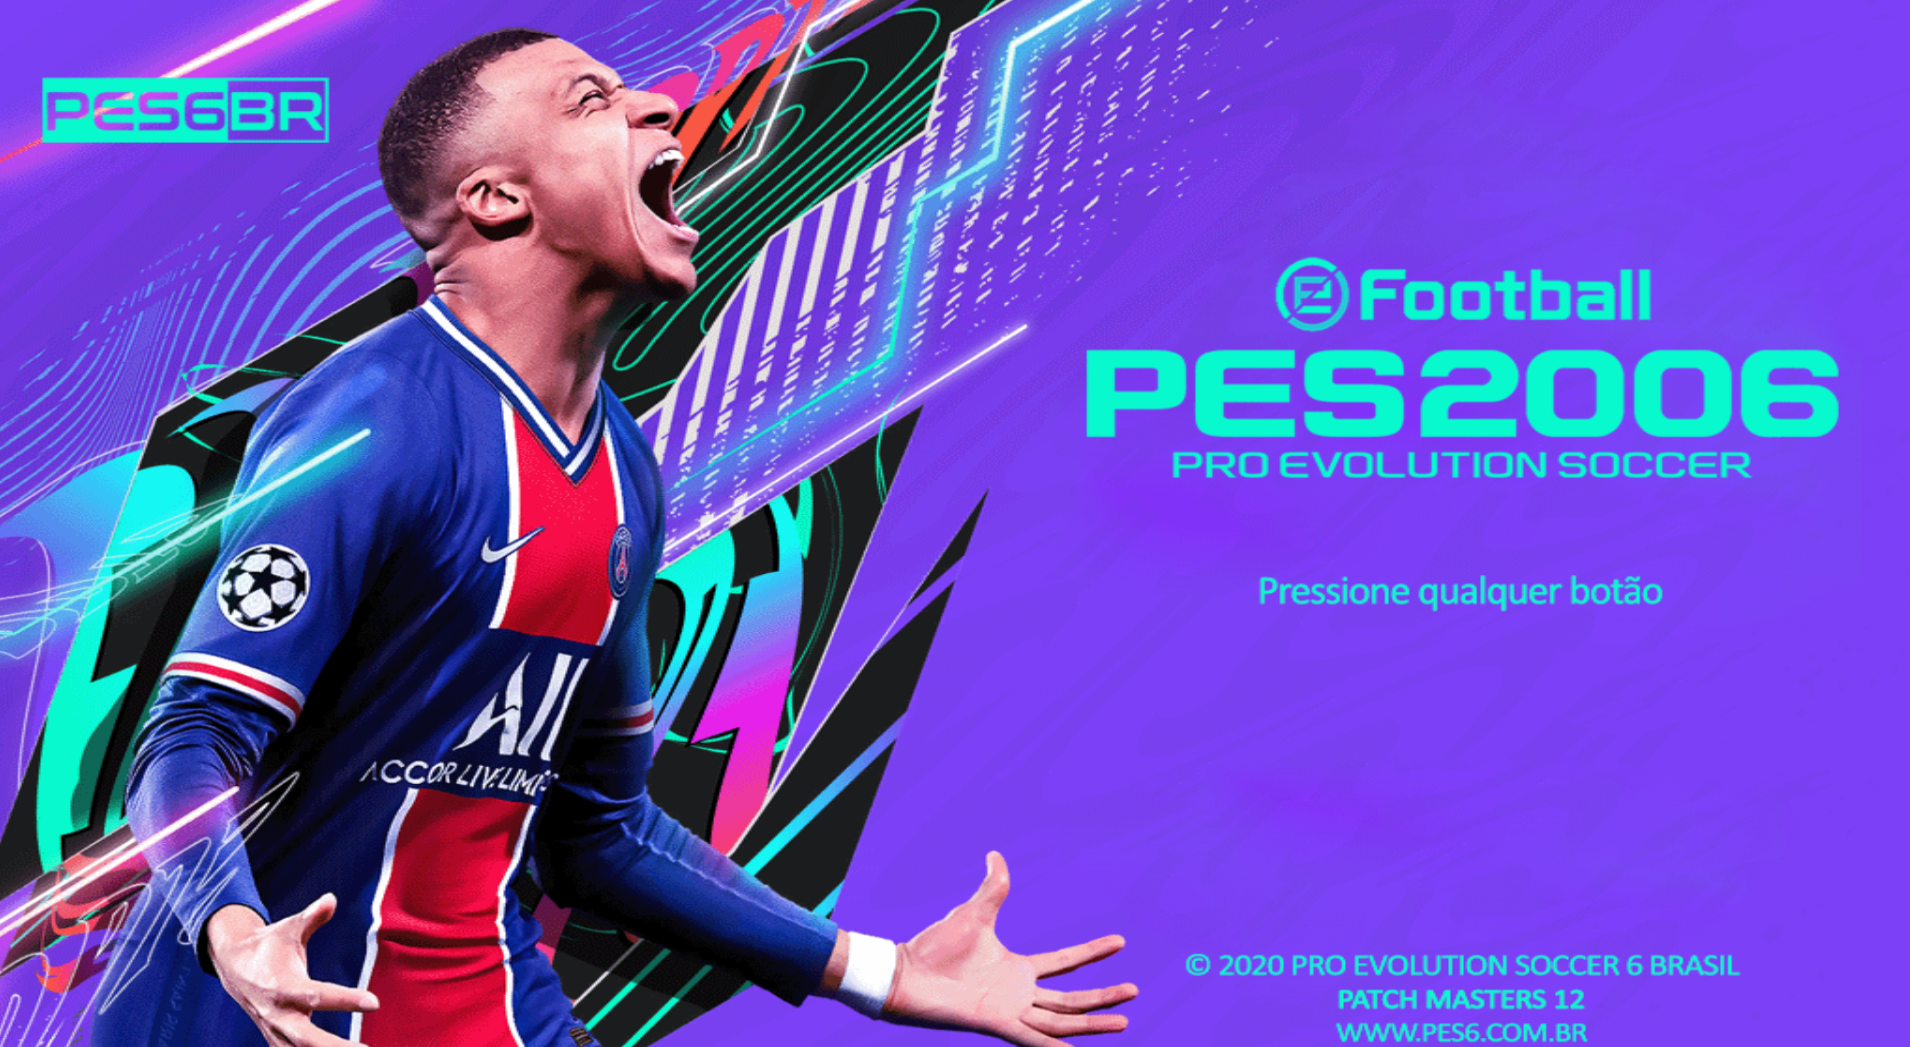 Jogo Pro Evolution Soccer 2019 PS4 Konami com o Melhor Preço é no Zoom